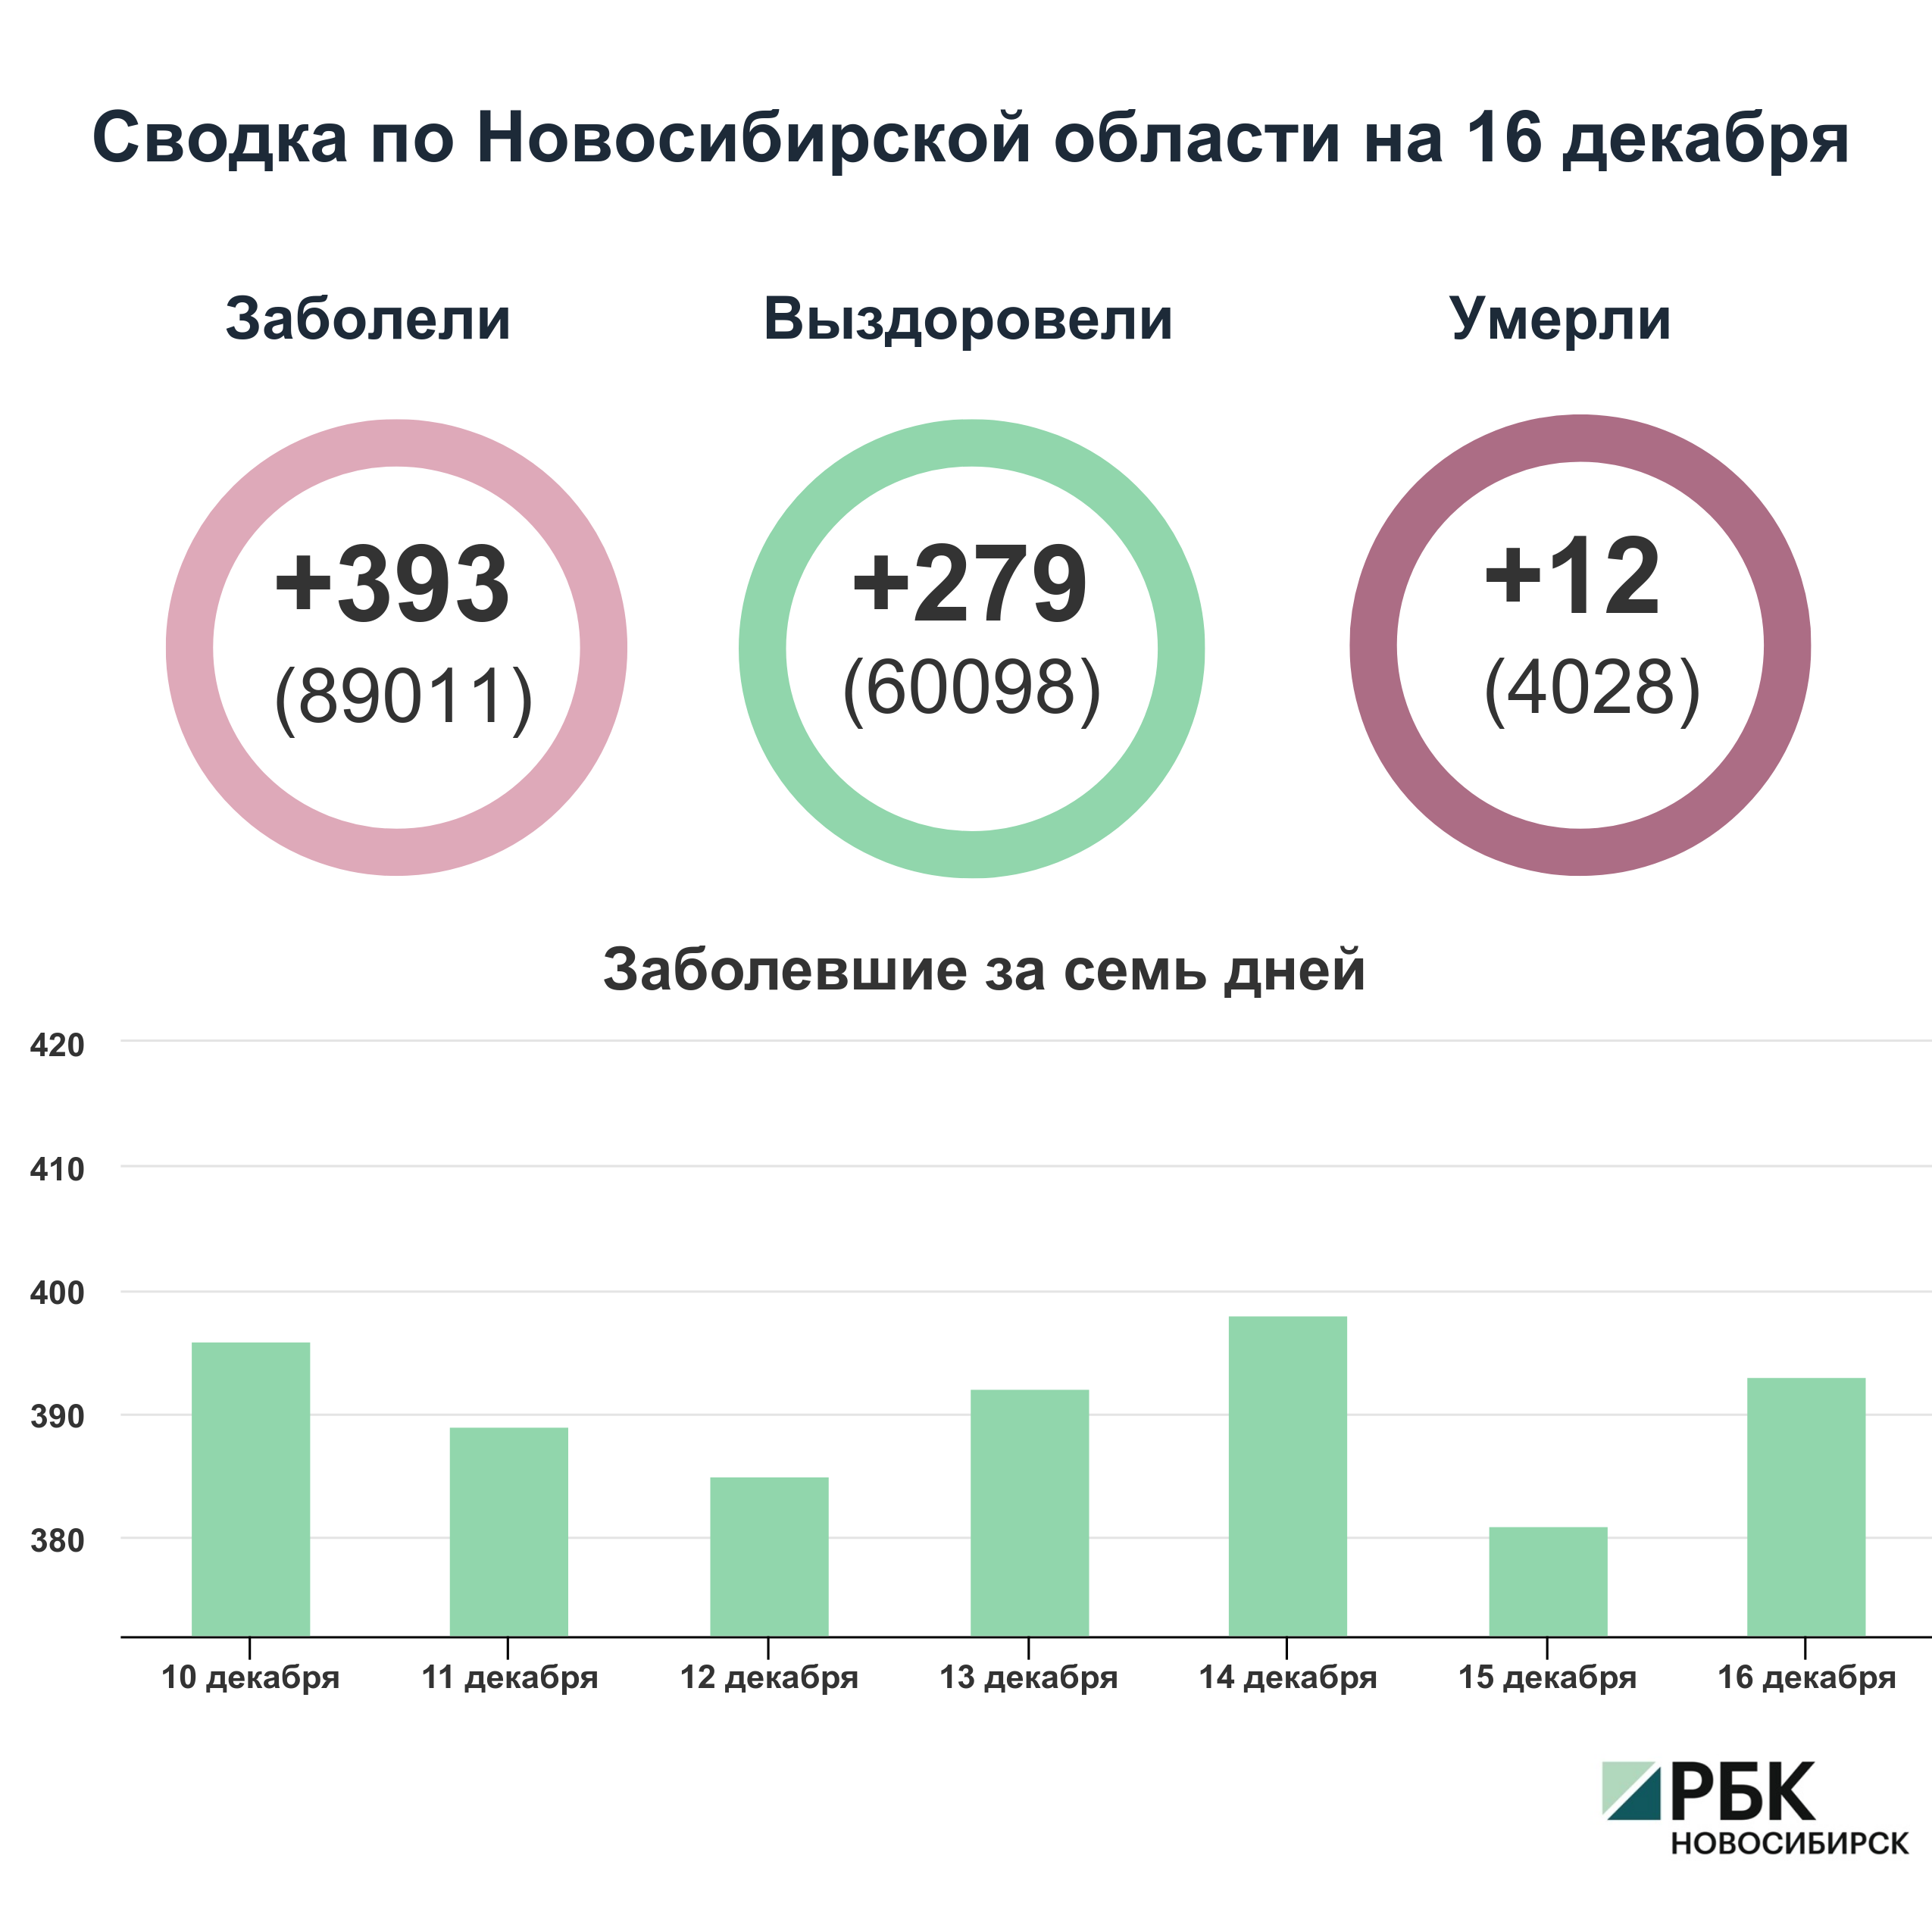 Коронавирус в Новосибирске: сводка на 16 декабря